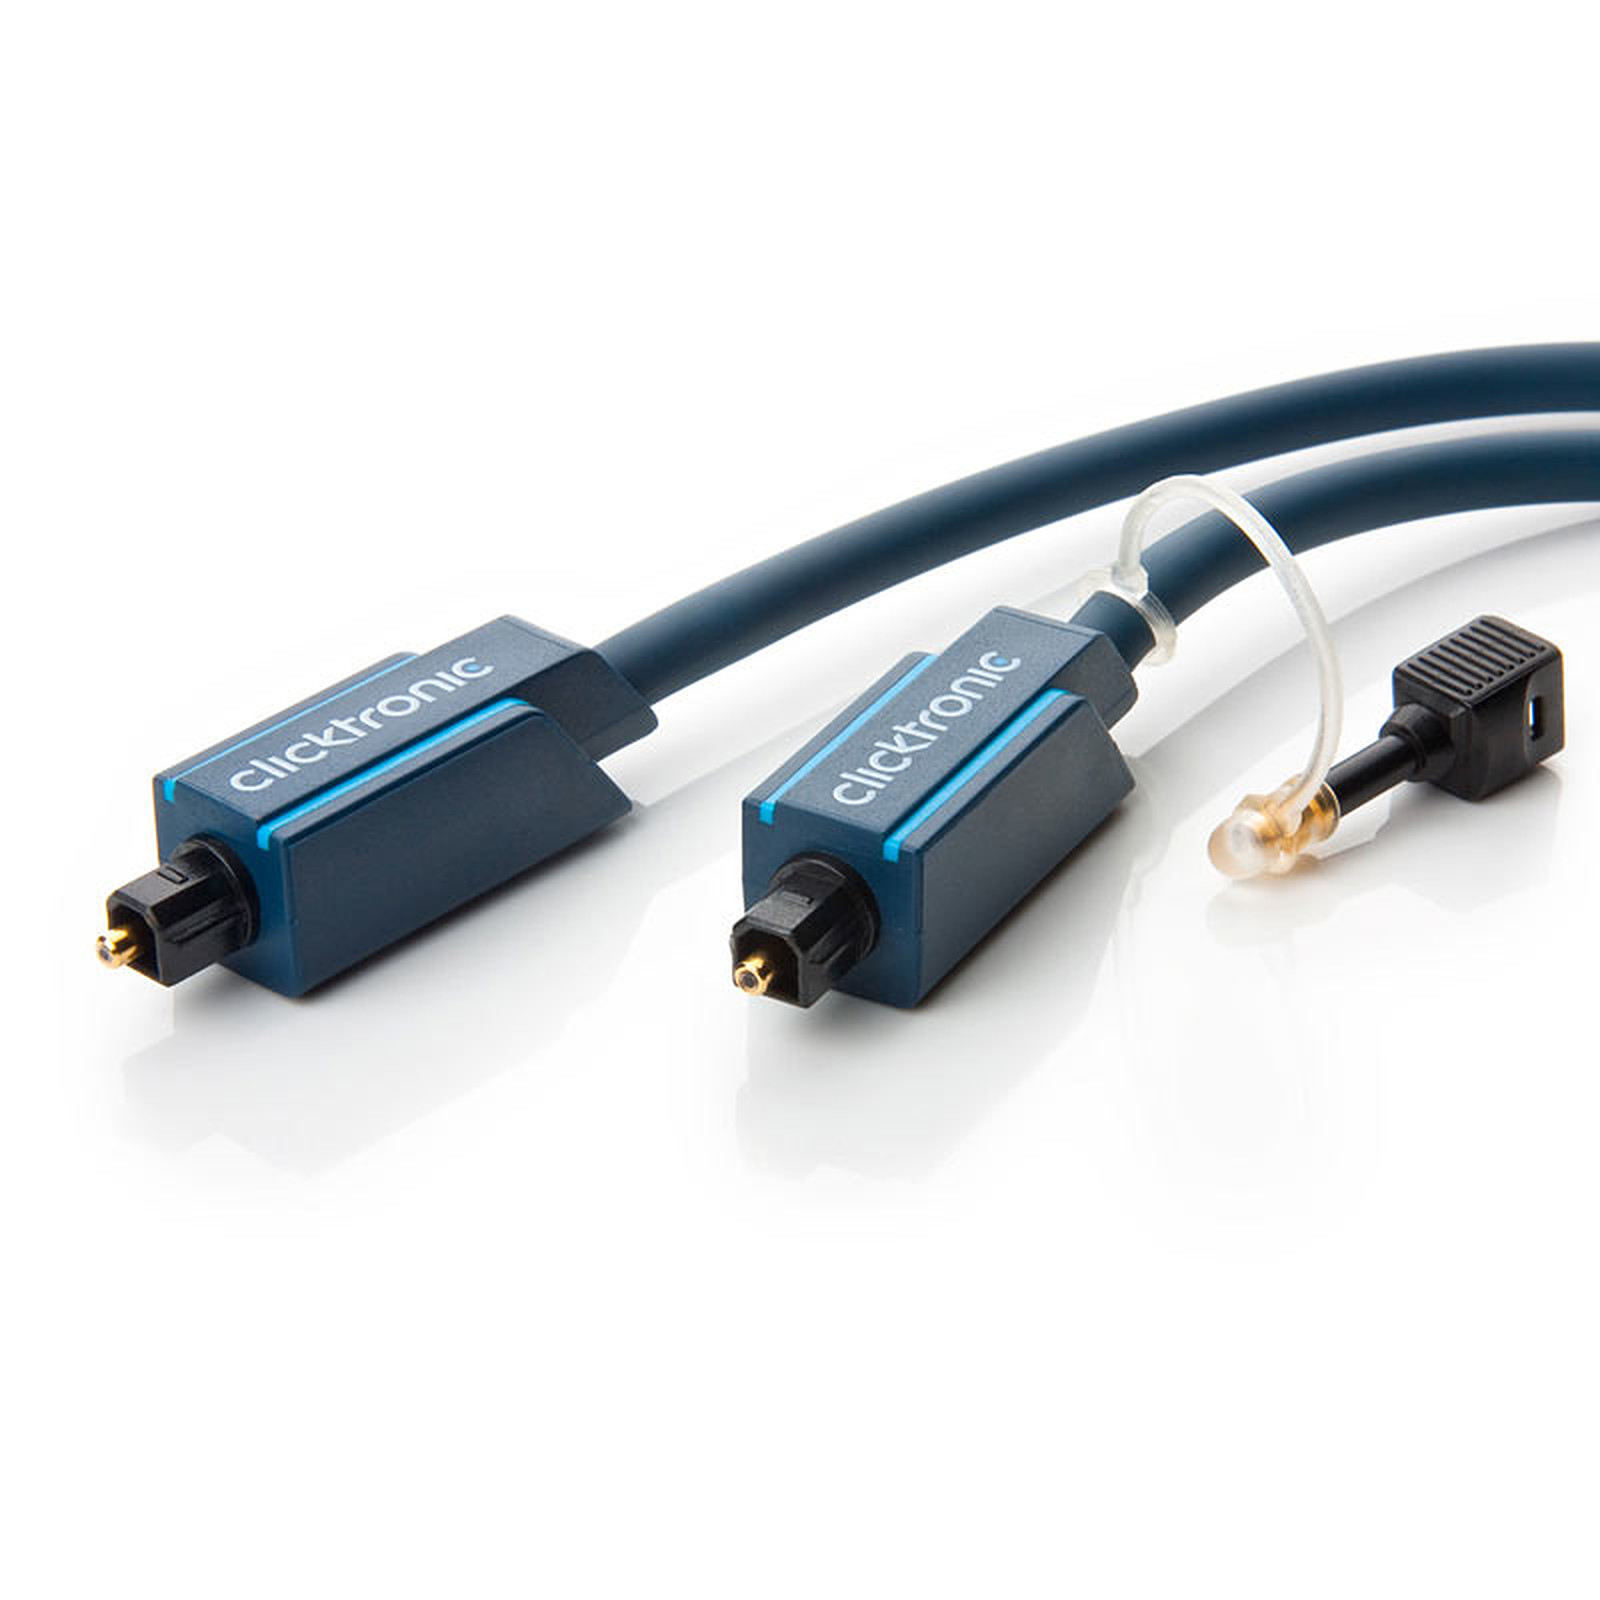 Clicktronic cable Toslink (15 mètres) - Cable audio numerique Clicktronic